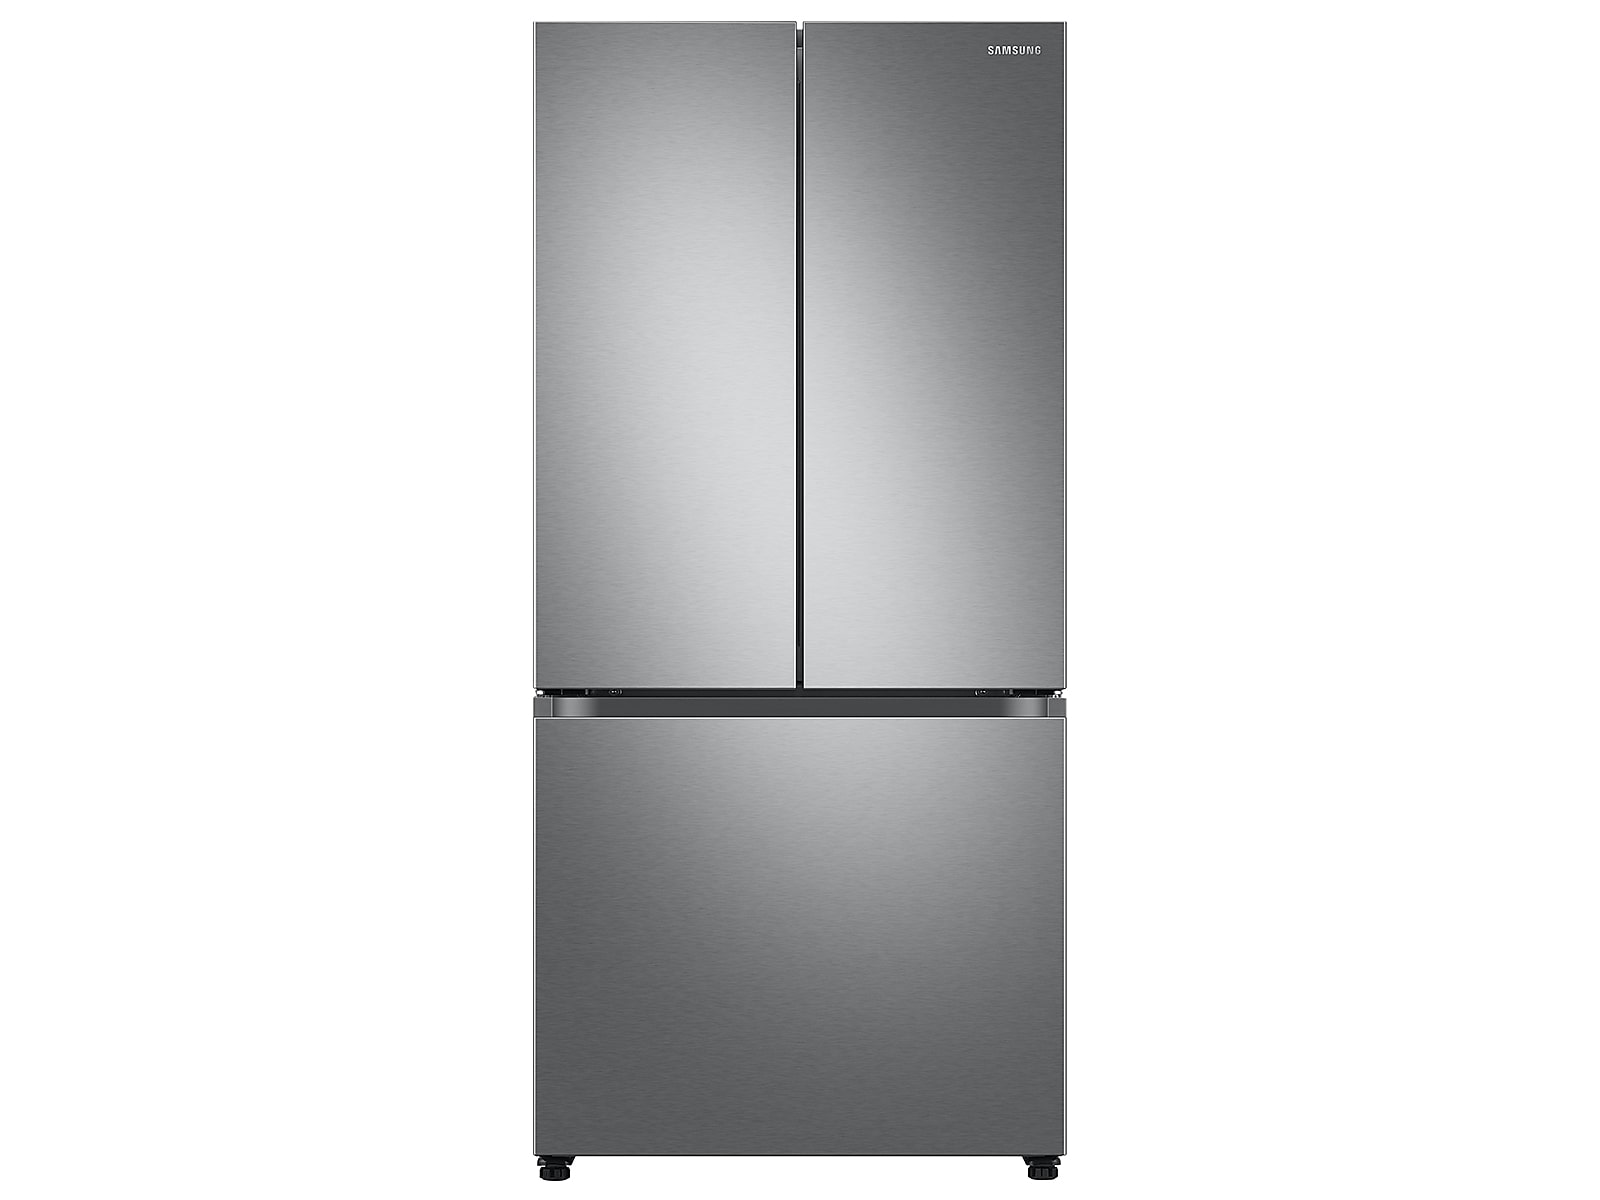 Samsung 25 cu. ft. 33" 3-Door French Door Refrigerator with Beverage Center™ in Stainless Steel(RF25C5551SR/AA)